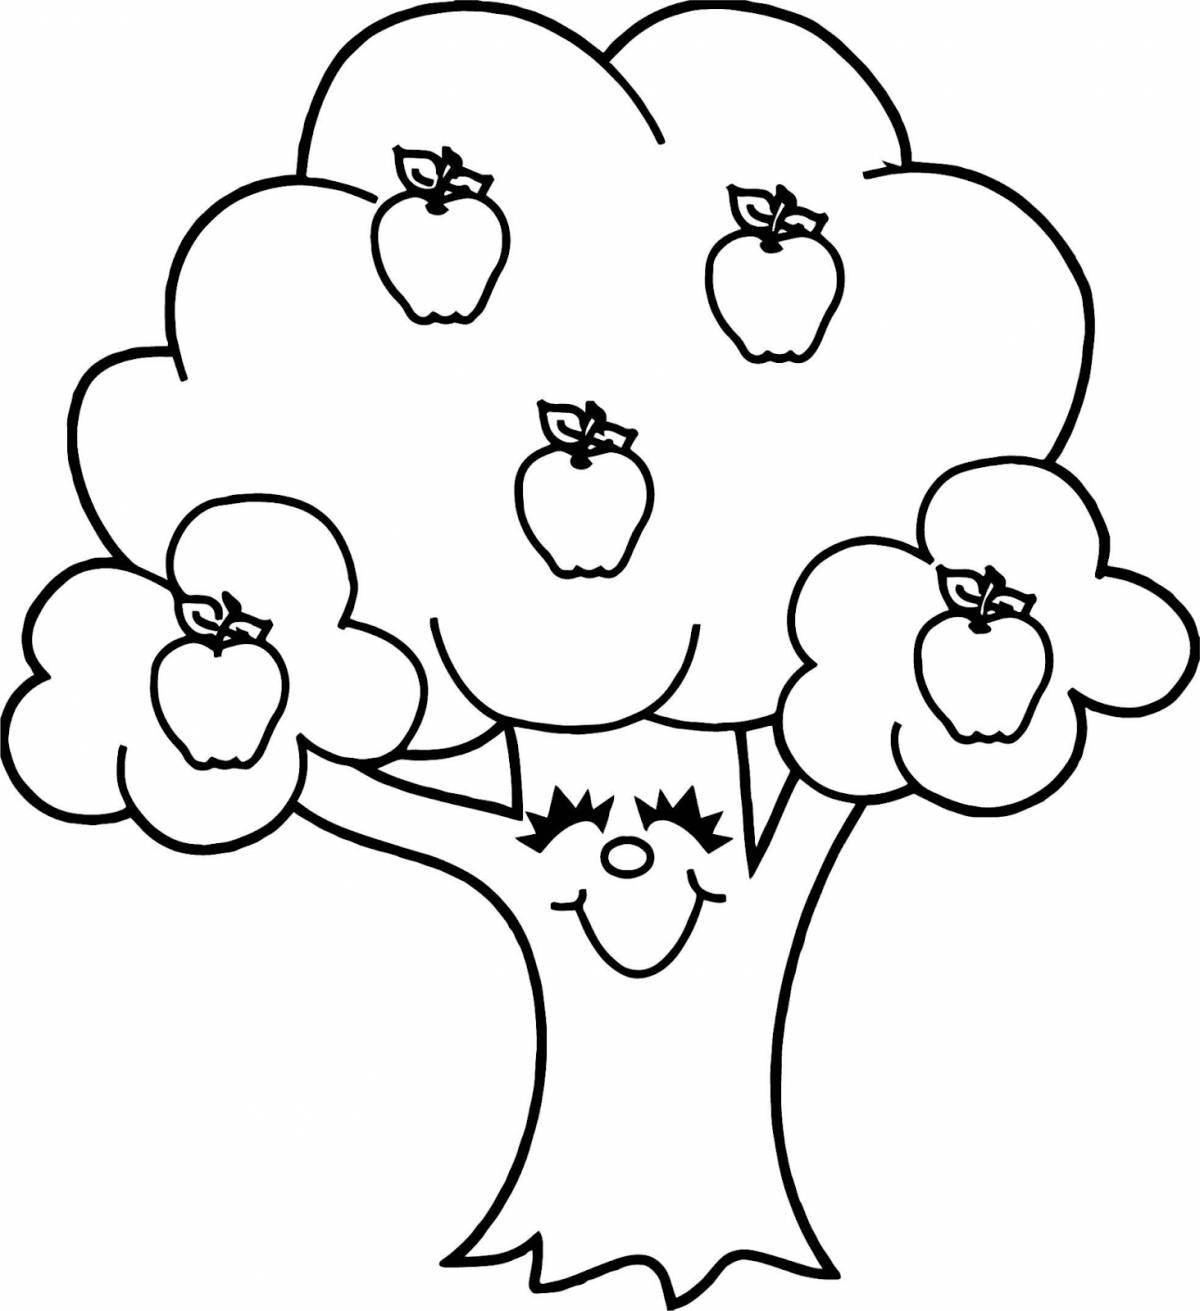 Apple tree #20